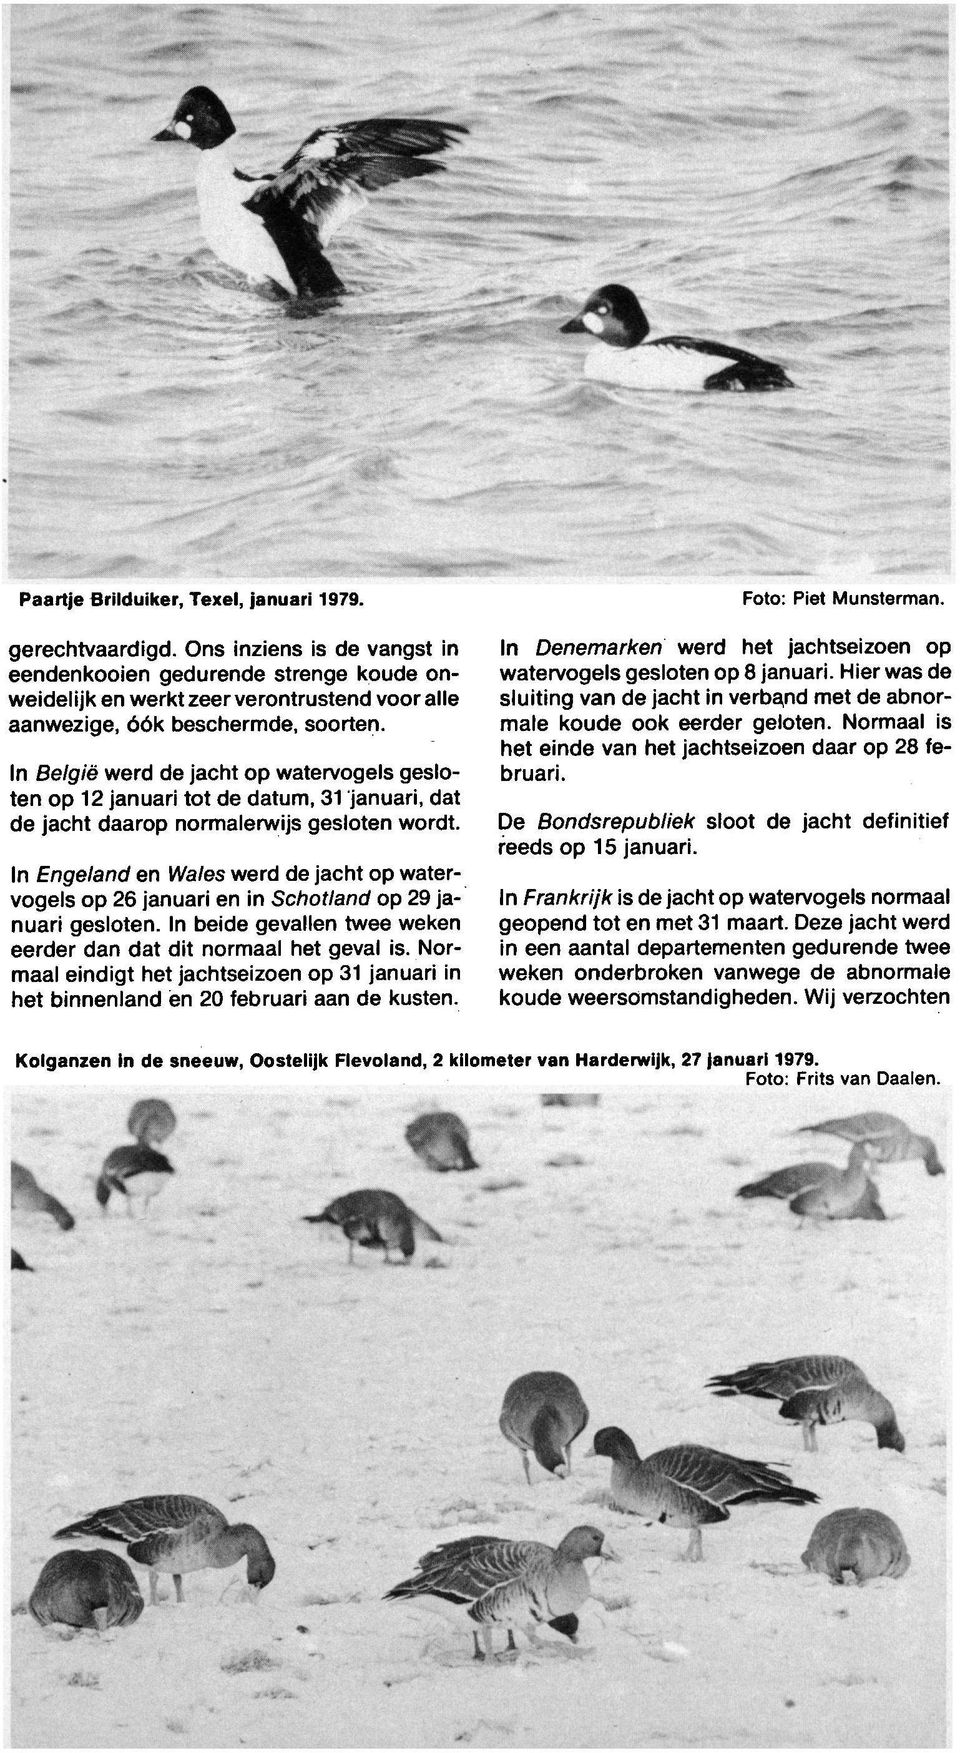 In België werd jacht watervogels geslot 12 januari tot datum, 31 januari, dat jacht daar normalerwijs geslot wordt. De Bondsrepubliek sloot reeds 15 januari.